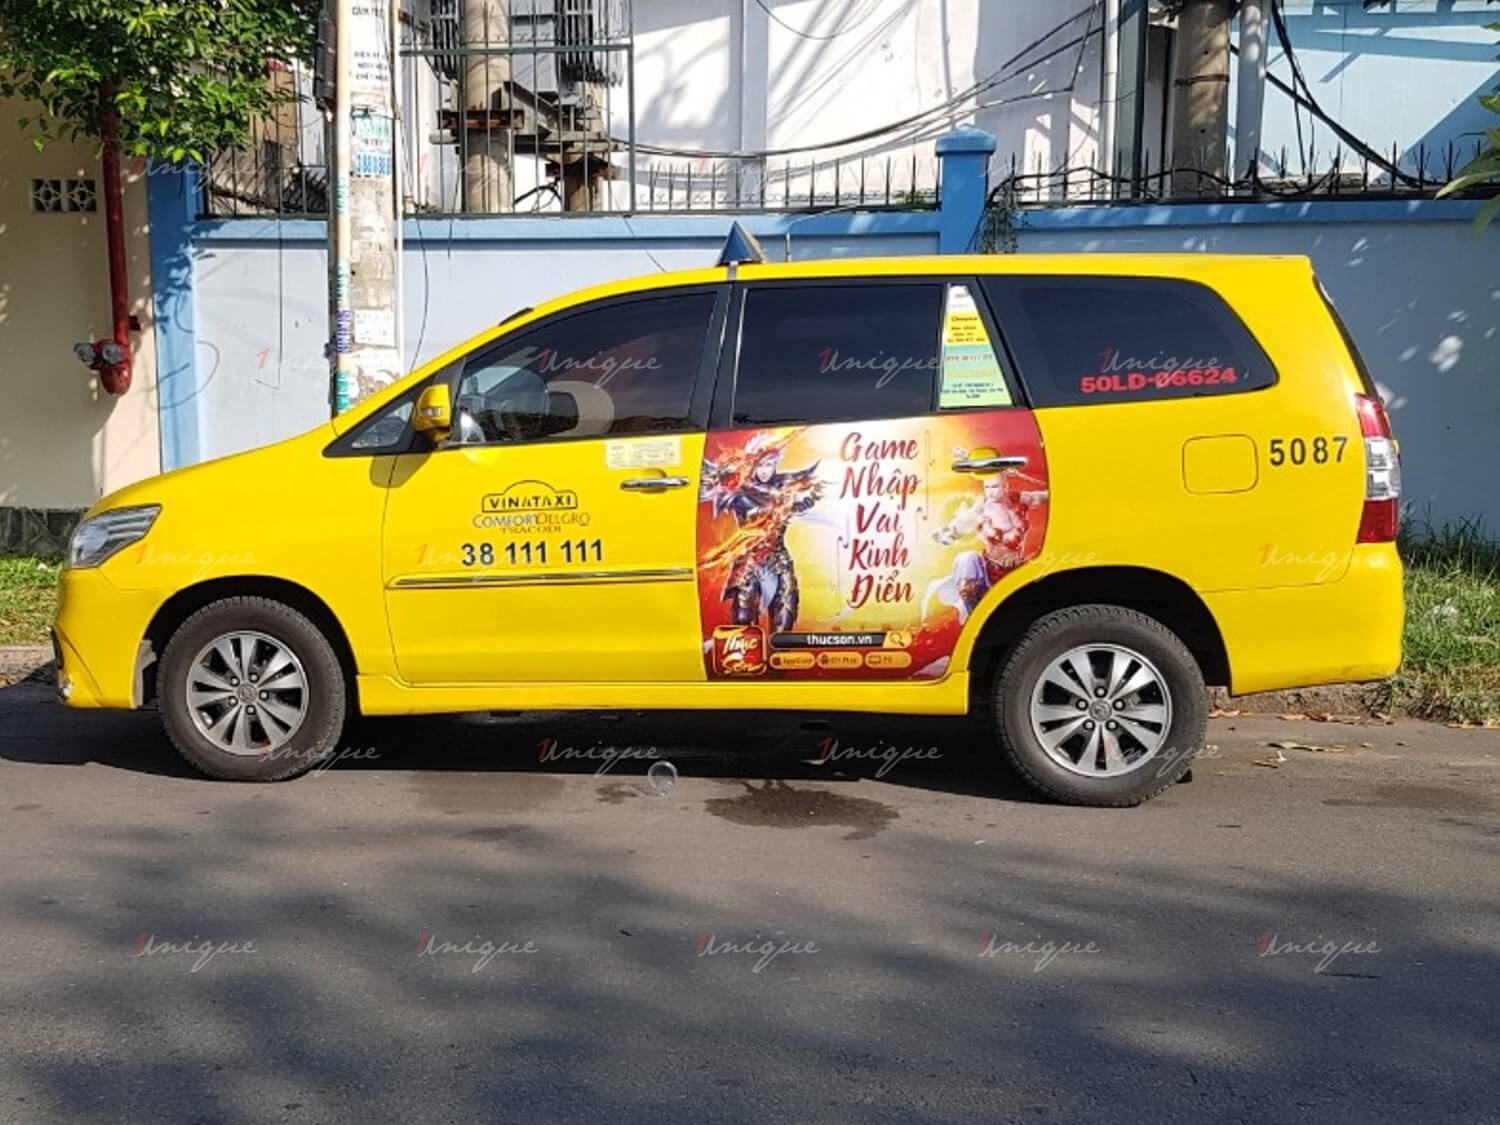 Soha game quảng cáo trên taxi